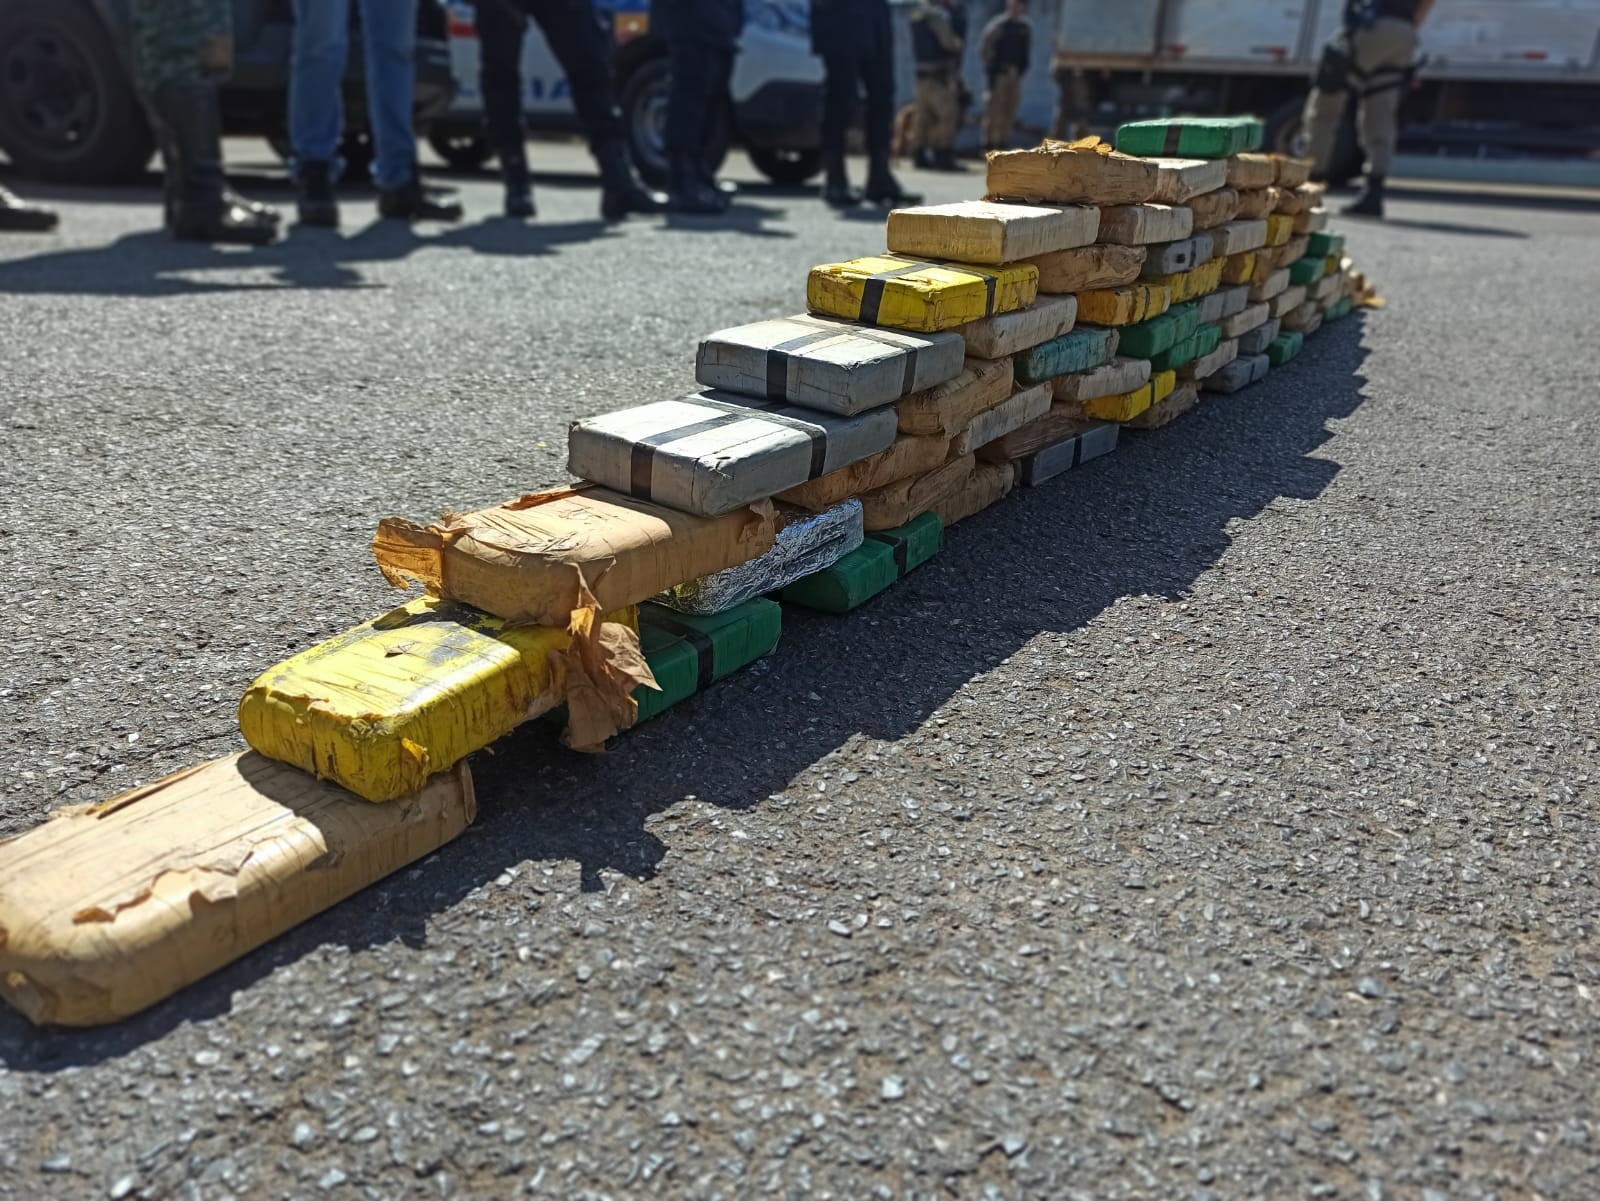 VÍDEO: mais de 60 kg de pasta base de cocaína são encontrados em fundo falso de caminhão em Patos de Minas